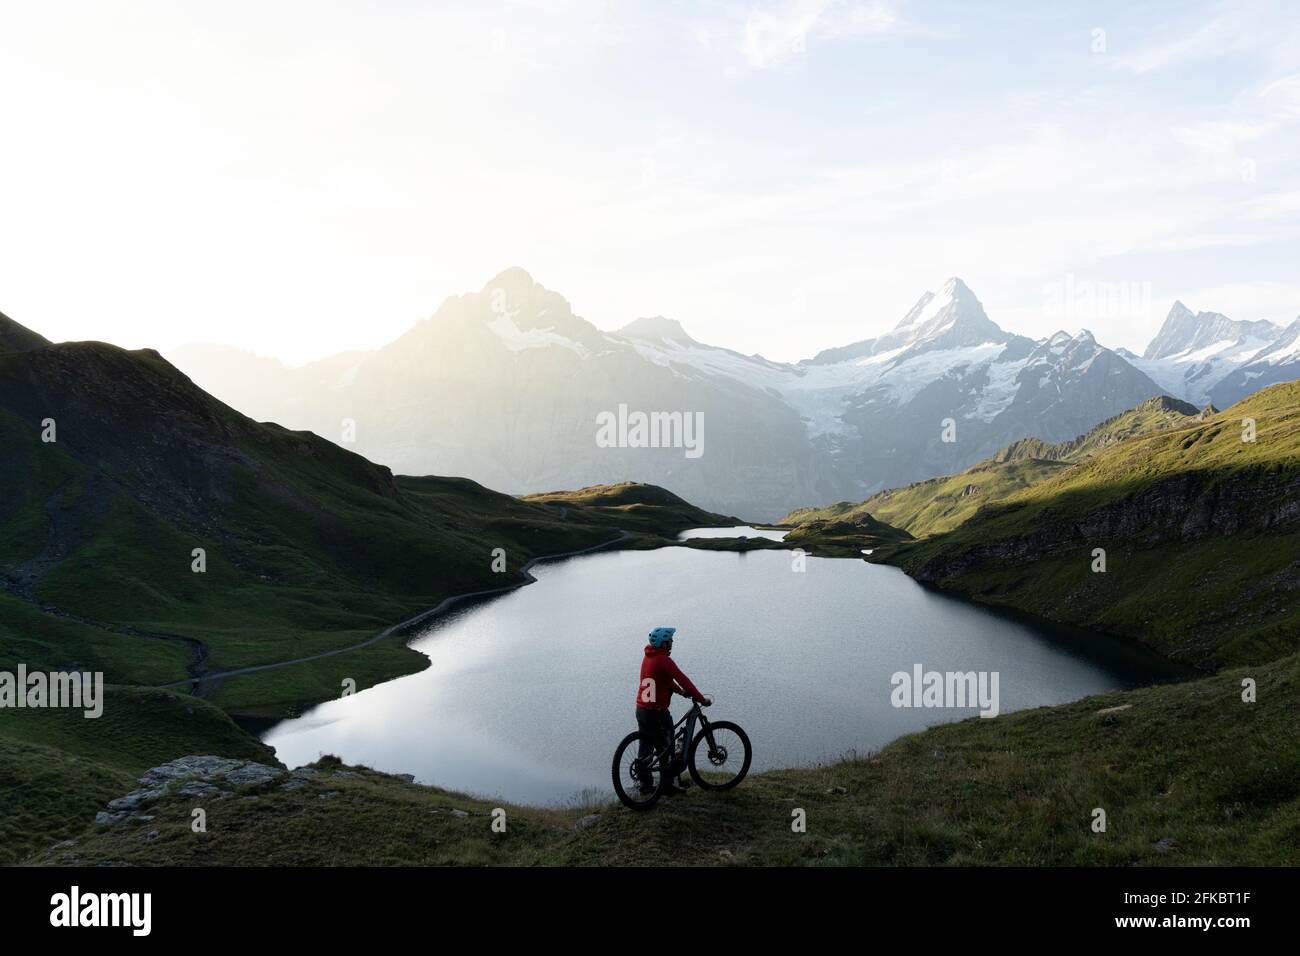 Escursionista in mountain bike ammirando l'alba sul lago di Bachalpsee, Grindelwald, Oberland Bernese, Canton Berna, Svizzera, Europa Foto Stock